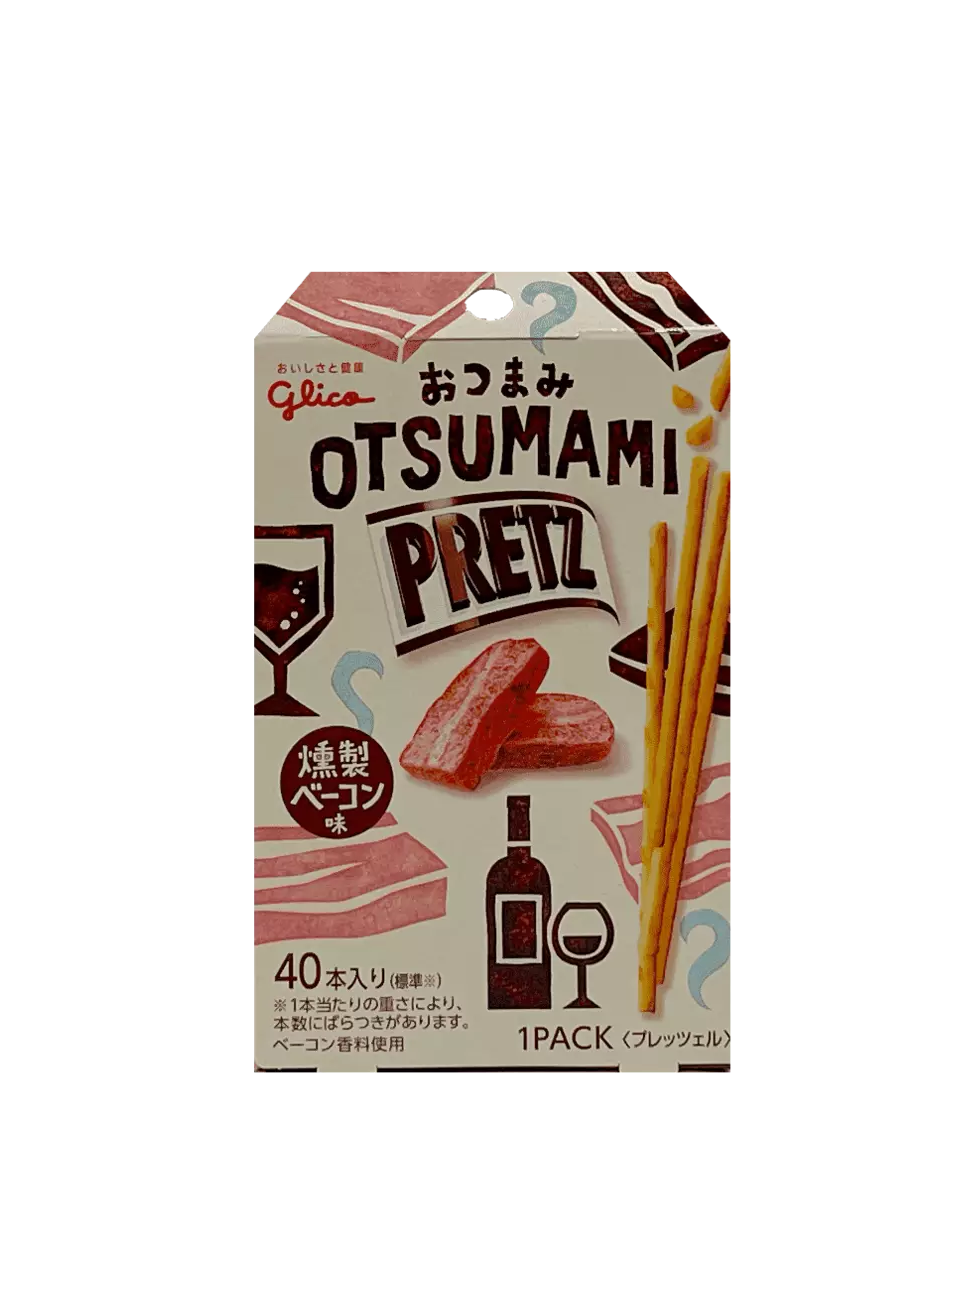 PRETZ Otsumami Smoked Bacon 24g Glico Japan